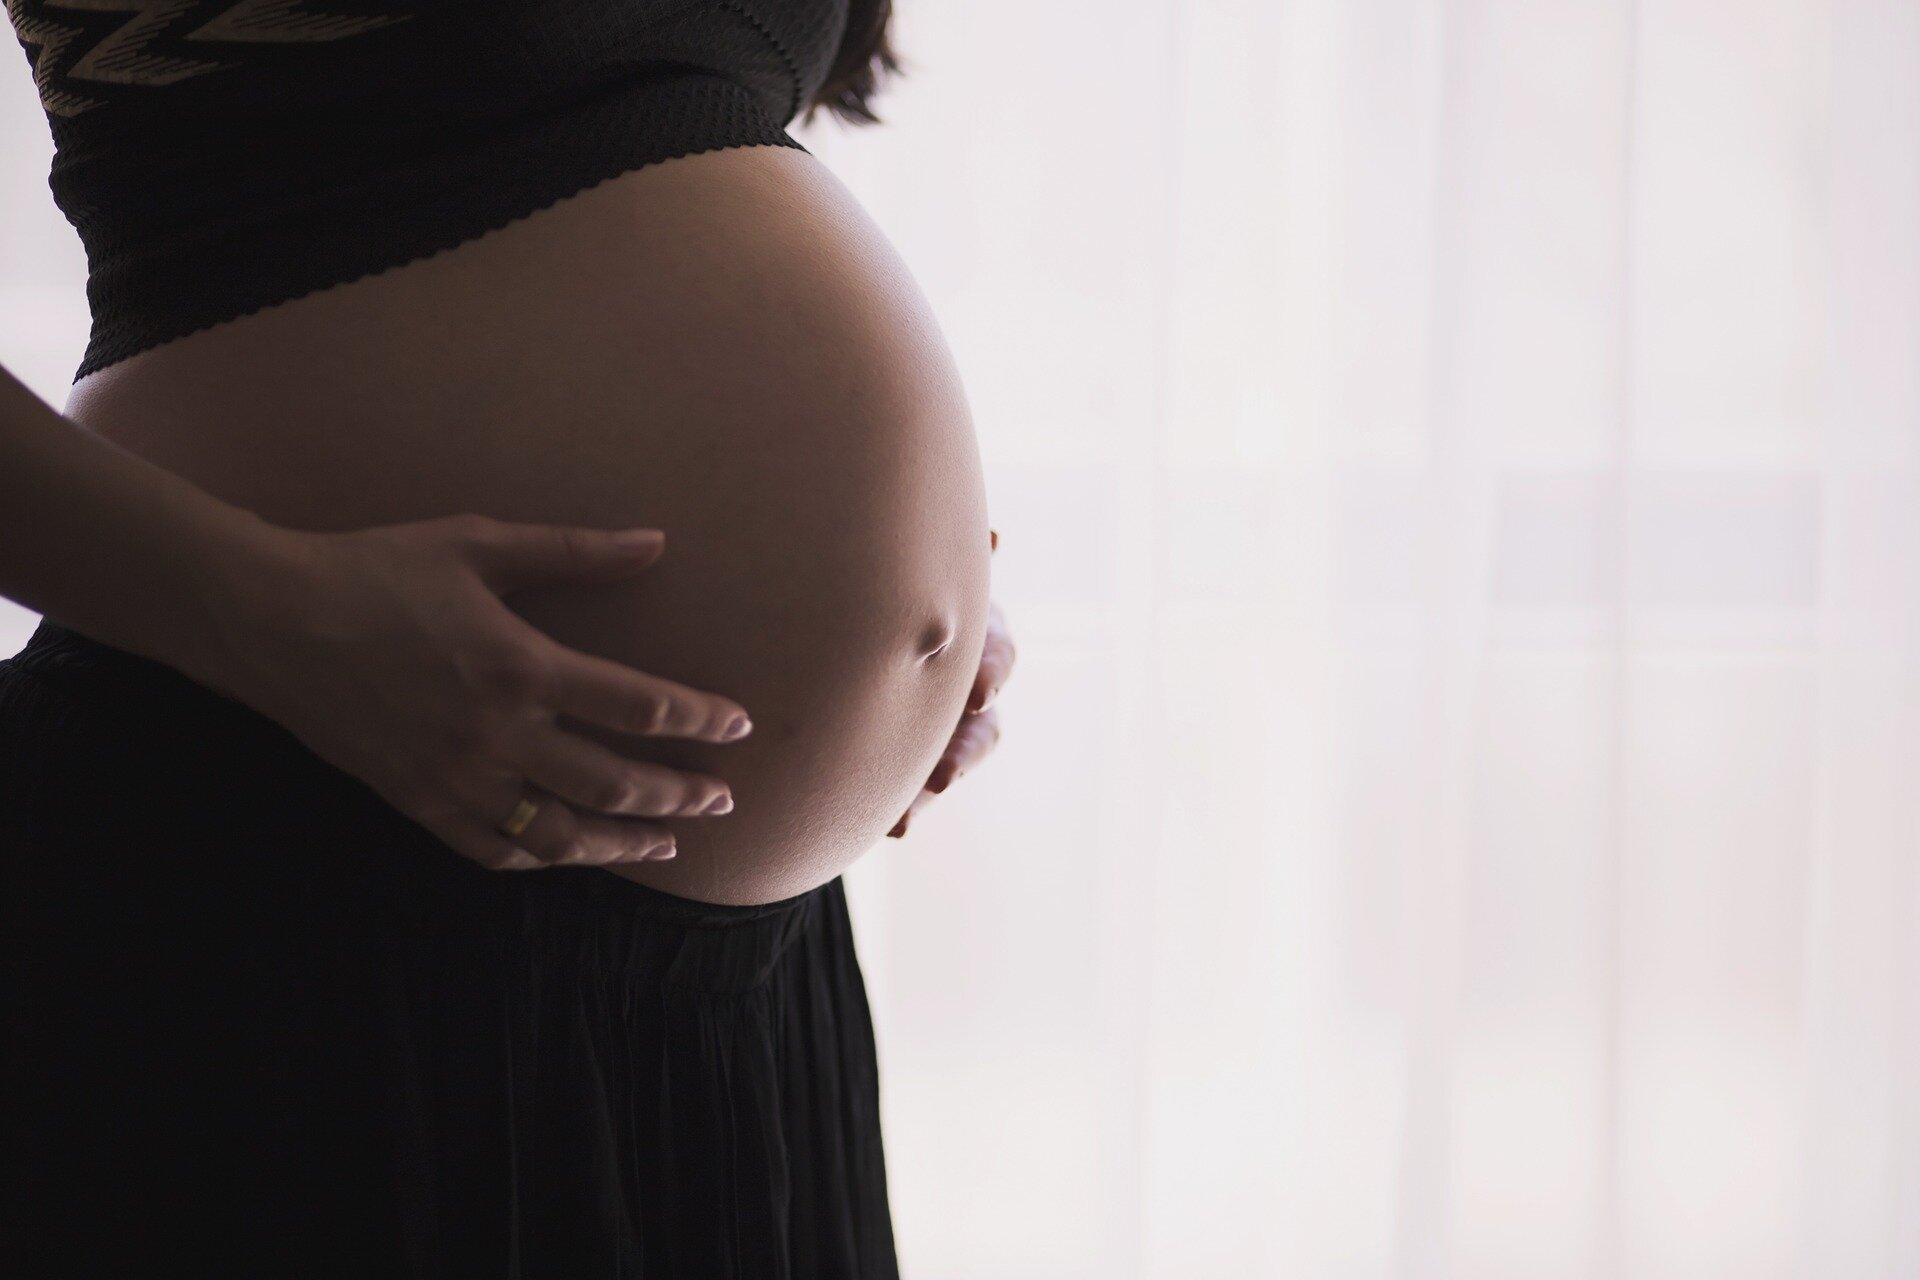 O femeie cu două utere a născut gemeni: Fiecare bebeluș s-a dezvoltat separat în câte un uter